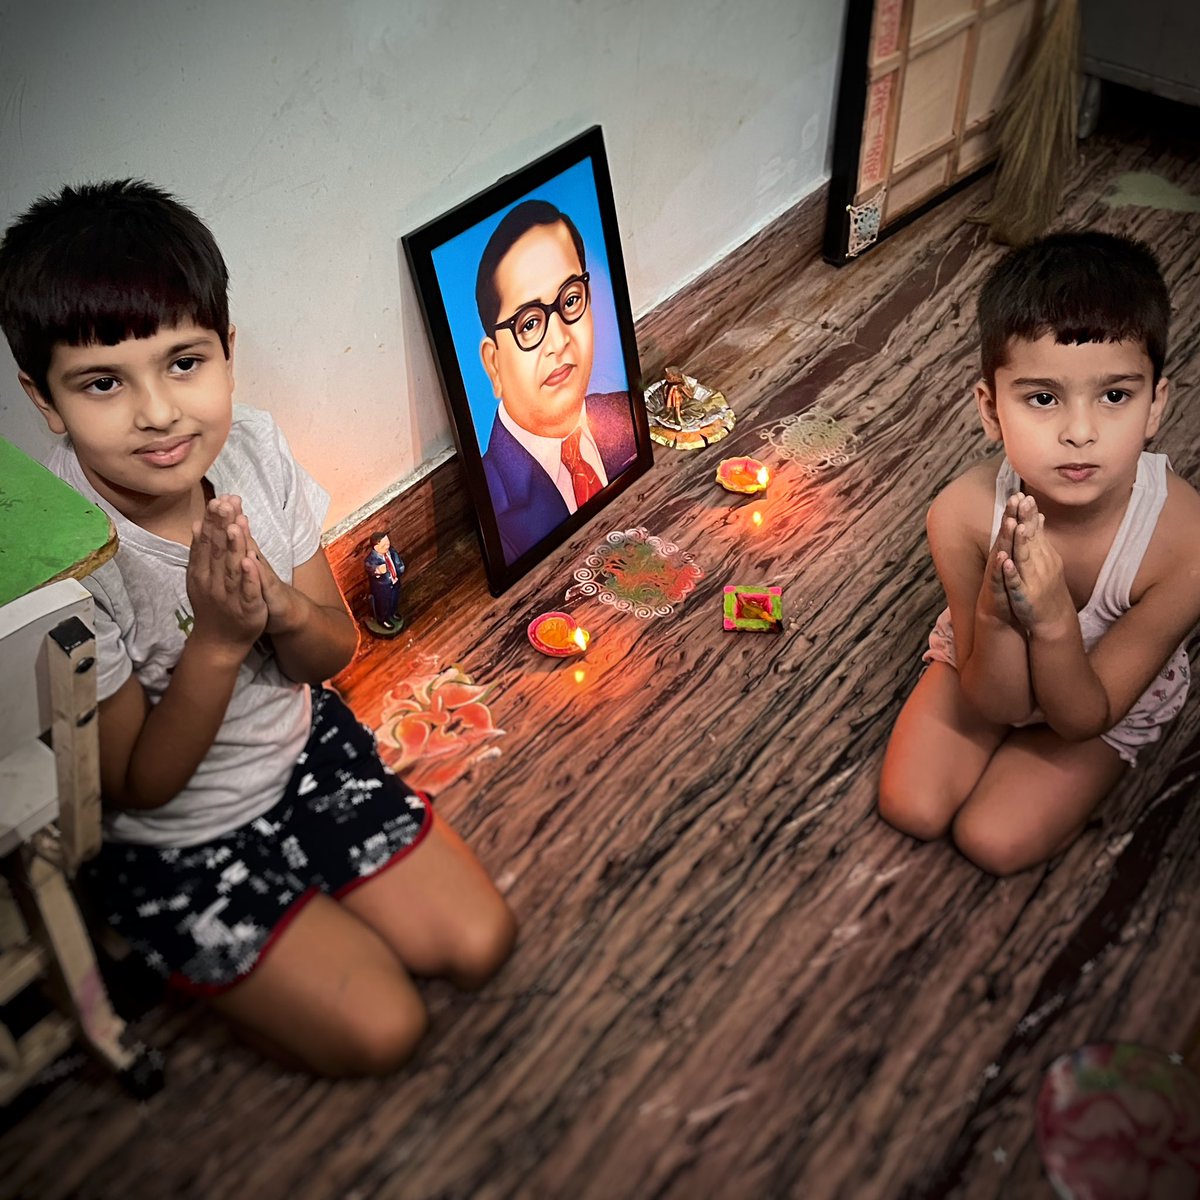 बच्चों ने घर पर रंगोली और दिया जलाकर मनाया बाबासाहेब अंबेडकर का जन्मदिन #JaiBhim